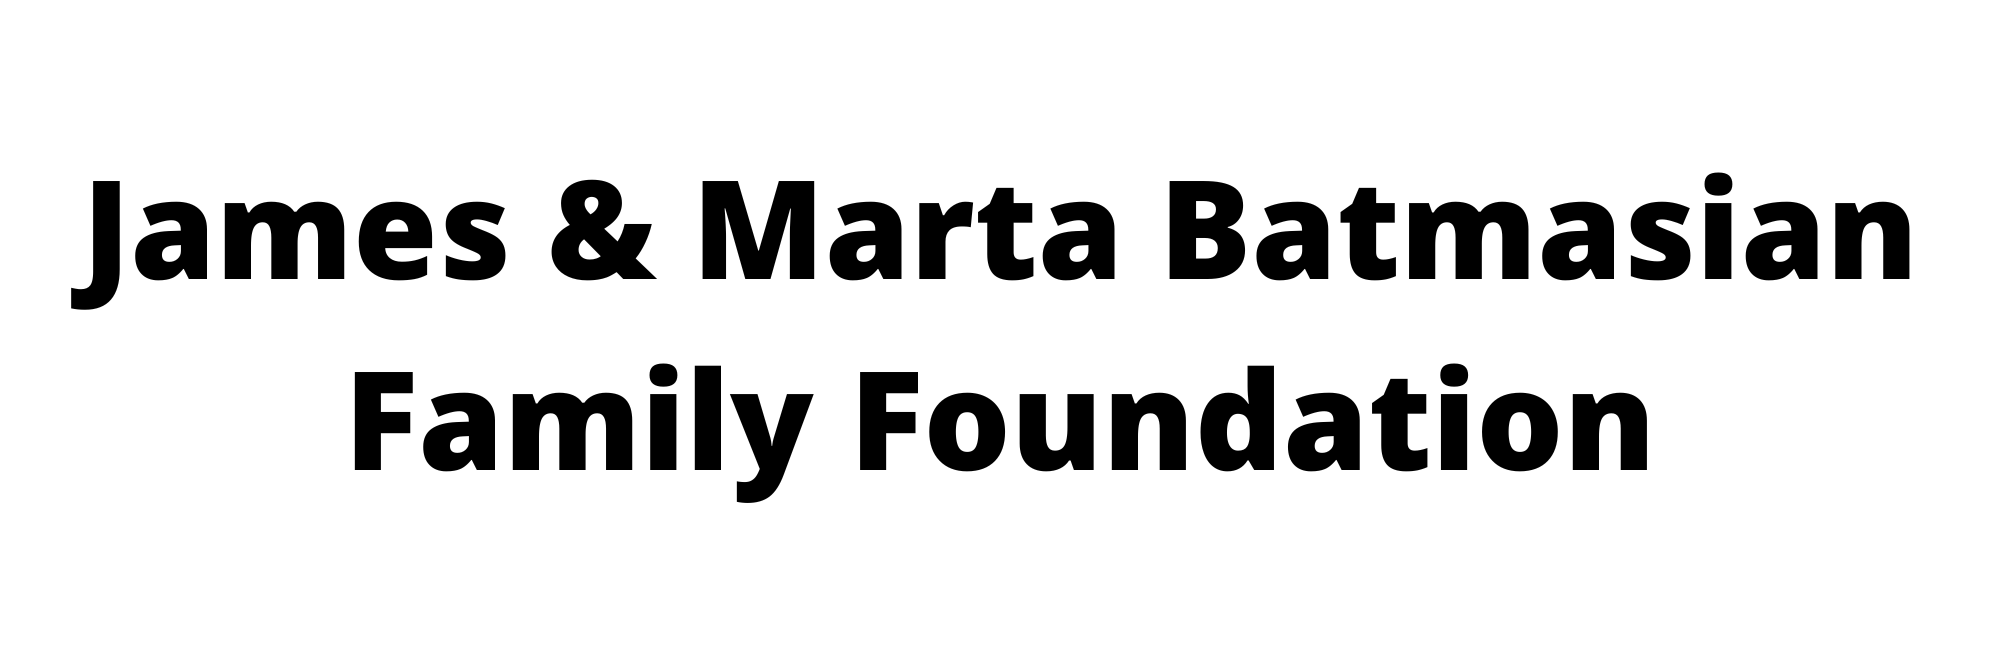 James & Marta Batmasian Family Foundation